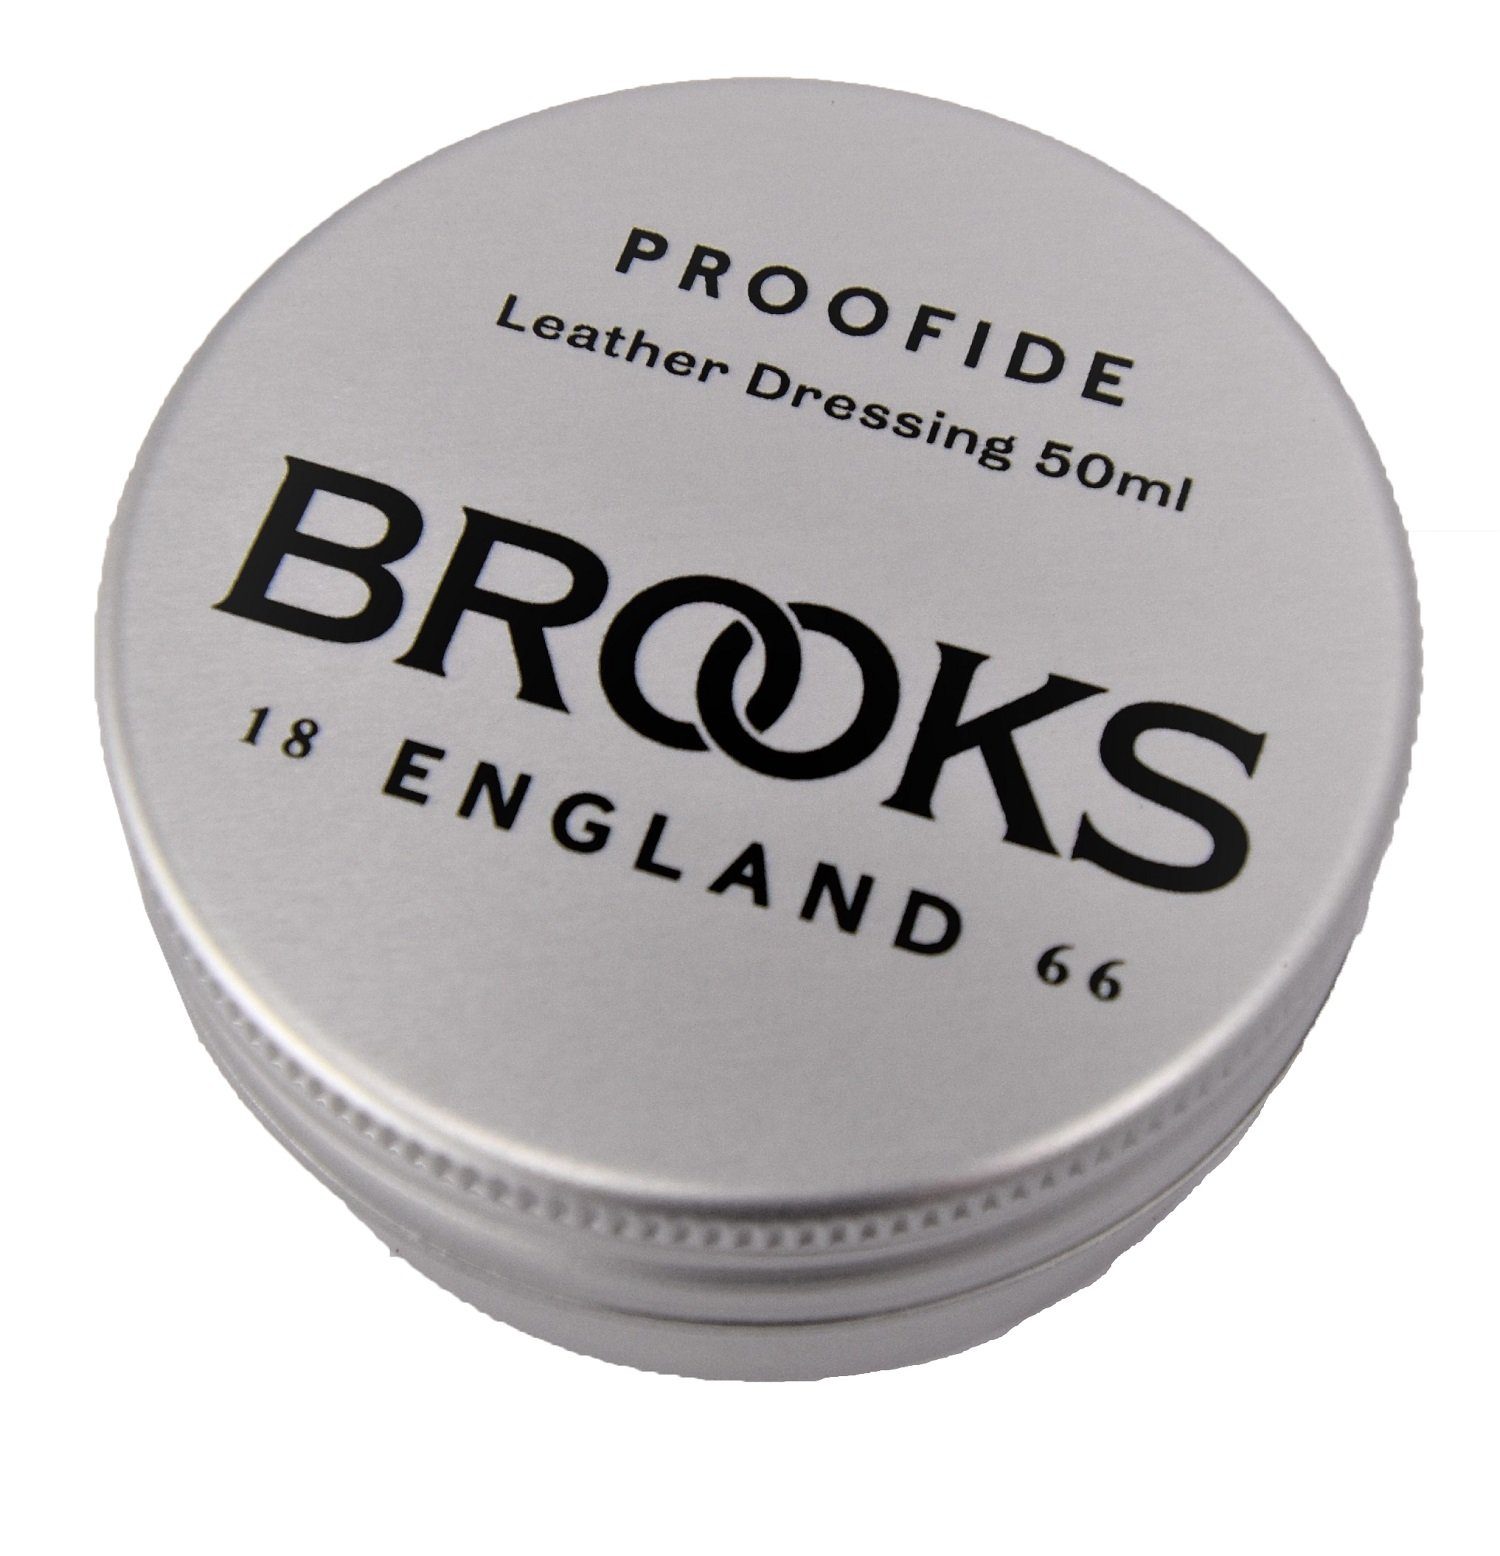 Fahrrad-Montageständer Brooks Proofide Single 50ml Brooks Lederpflege